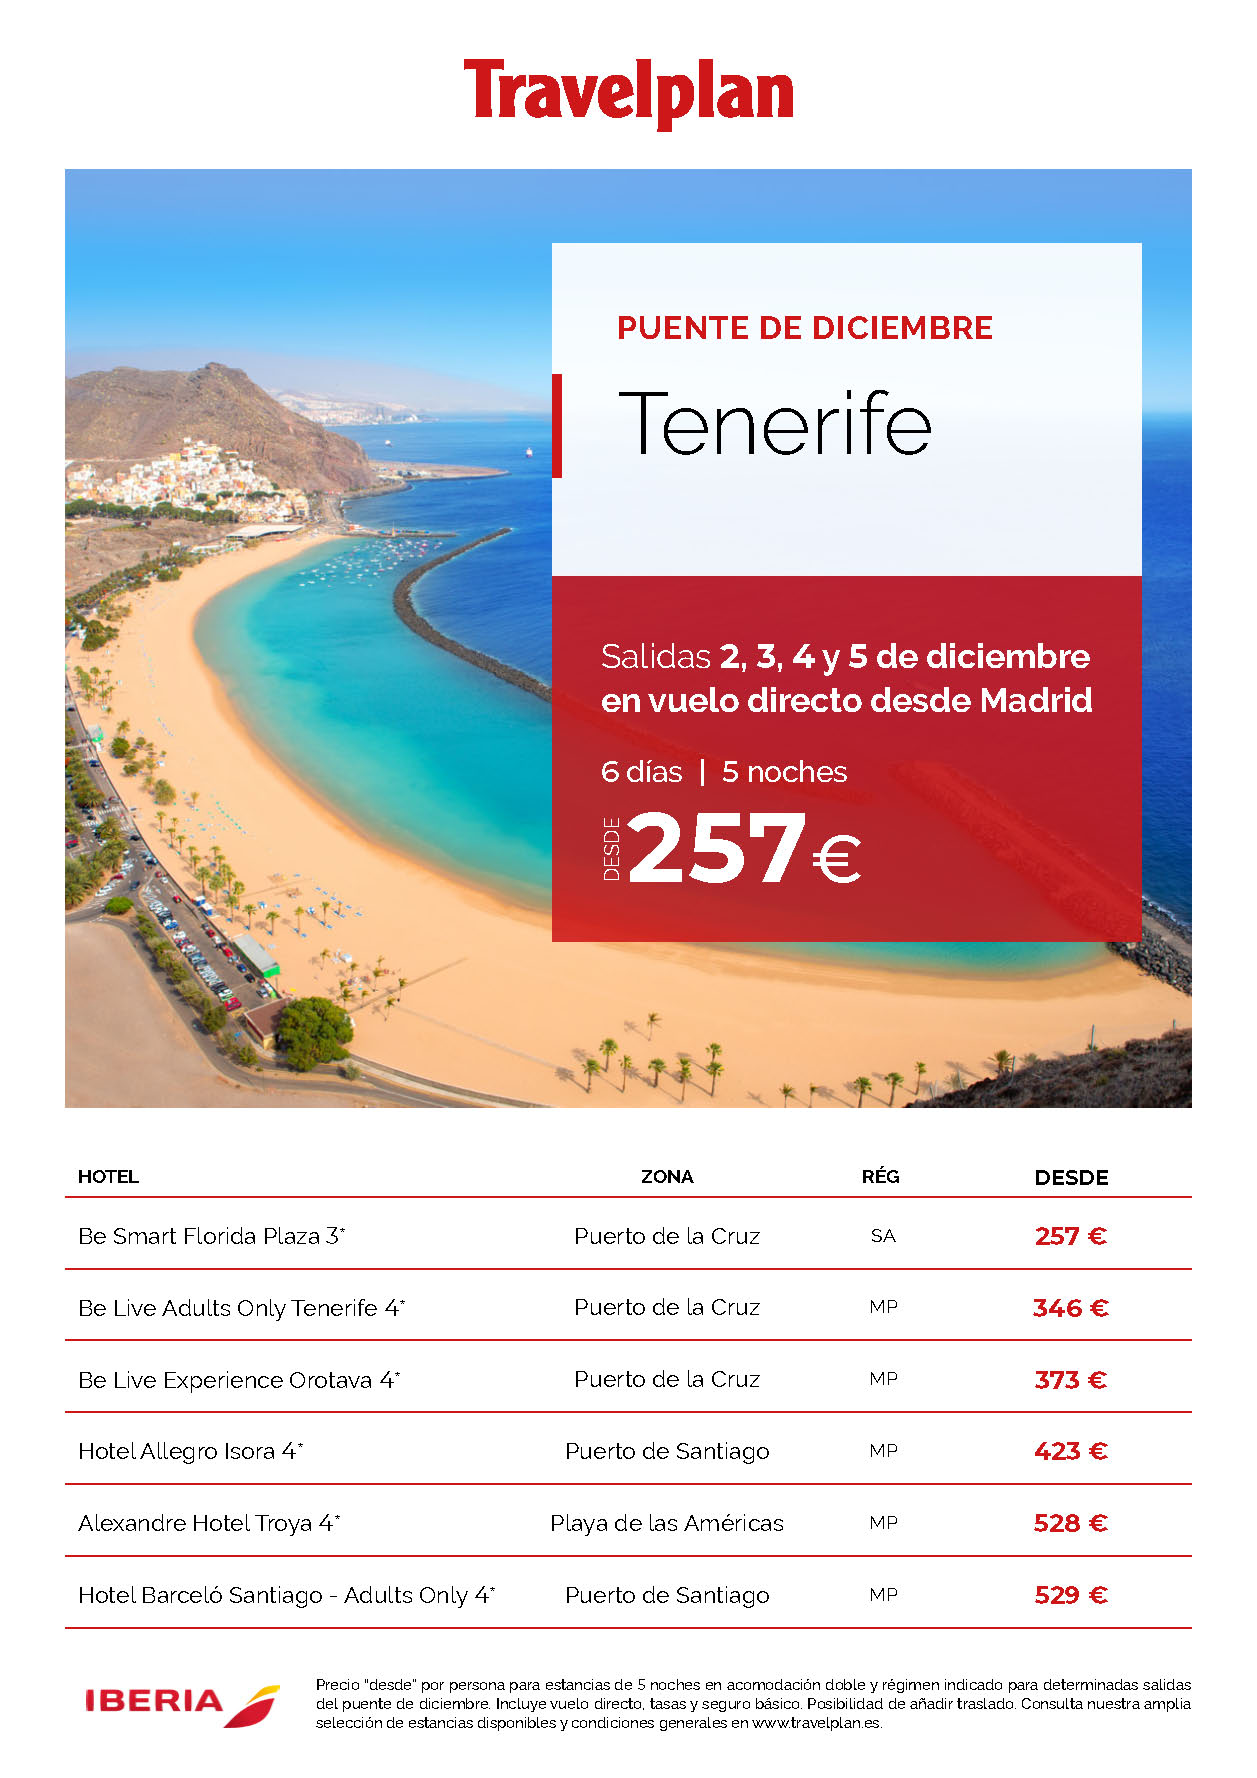 Oferta Travelplan Puente de Diciembre 2023 en Tenerife 6 dias Media Pension salidas 2 3 4 y 5 Diciembre vuelo directo desde Madrid